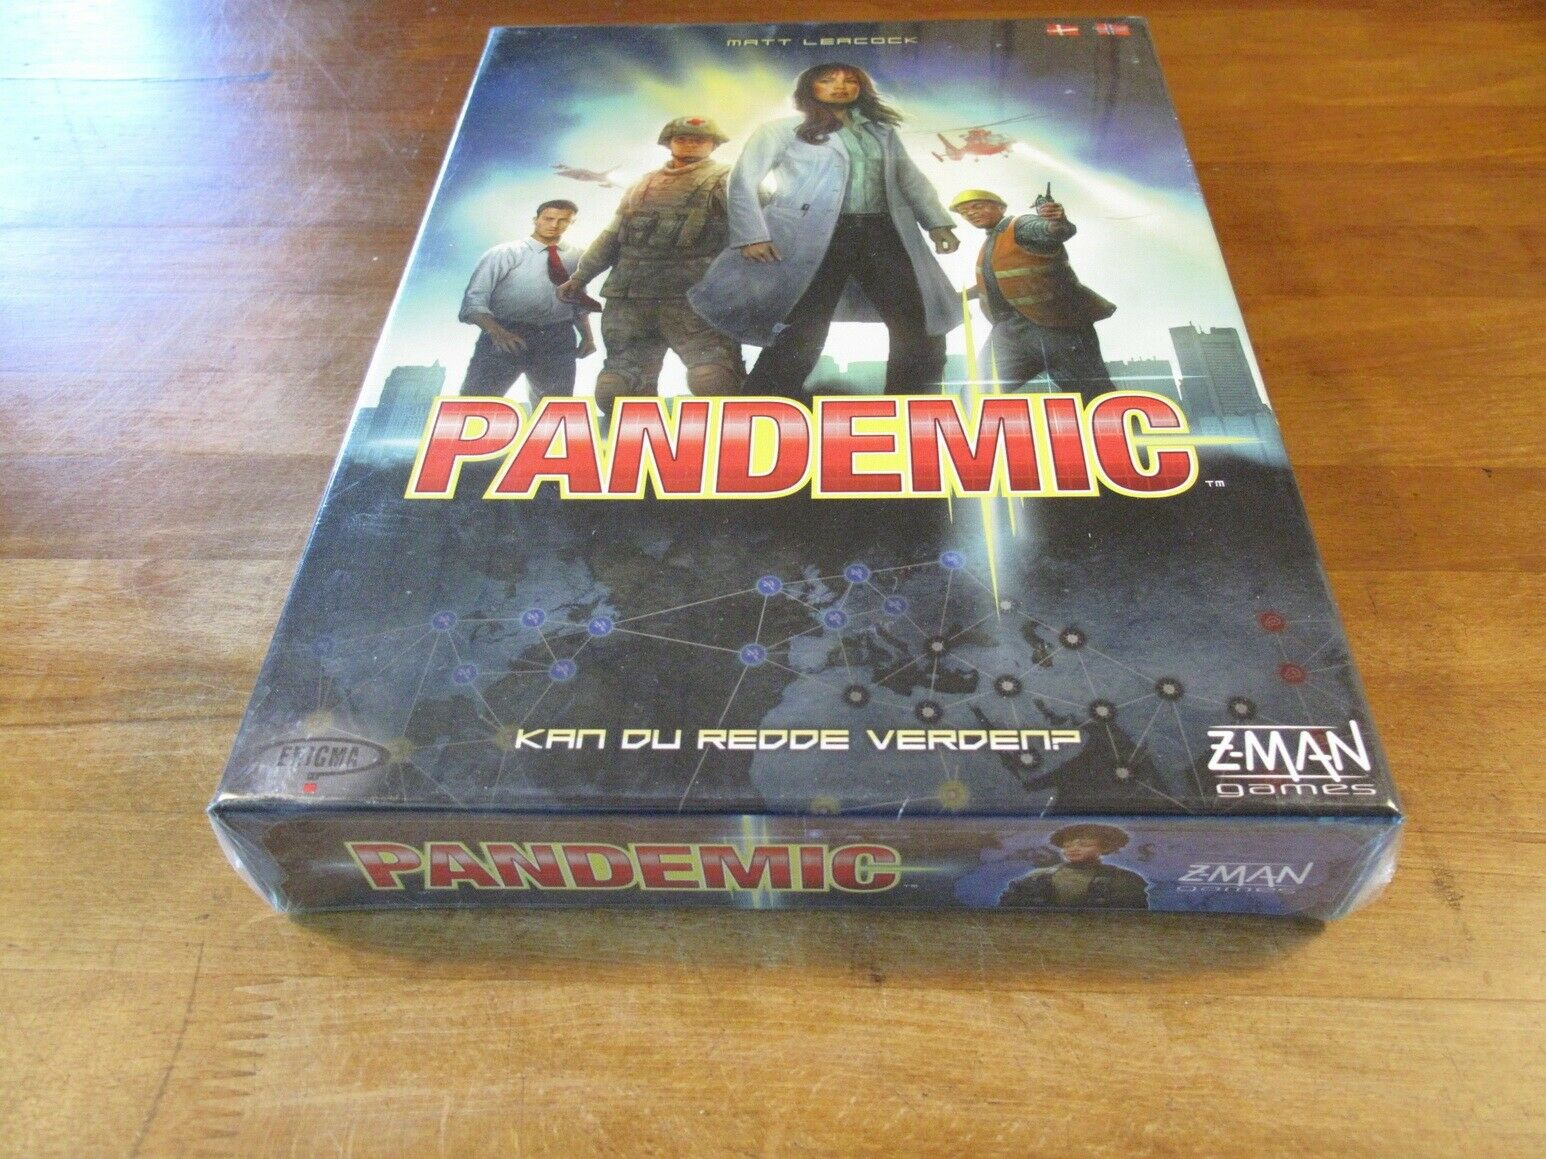 Pandemic (2012, 1. oplag), samarbejdespil